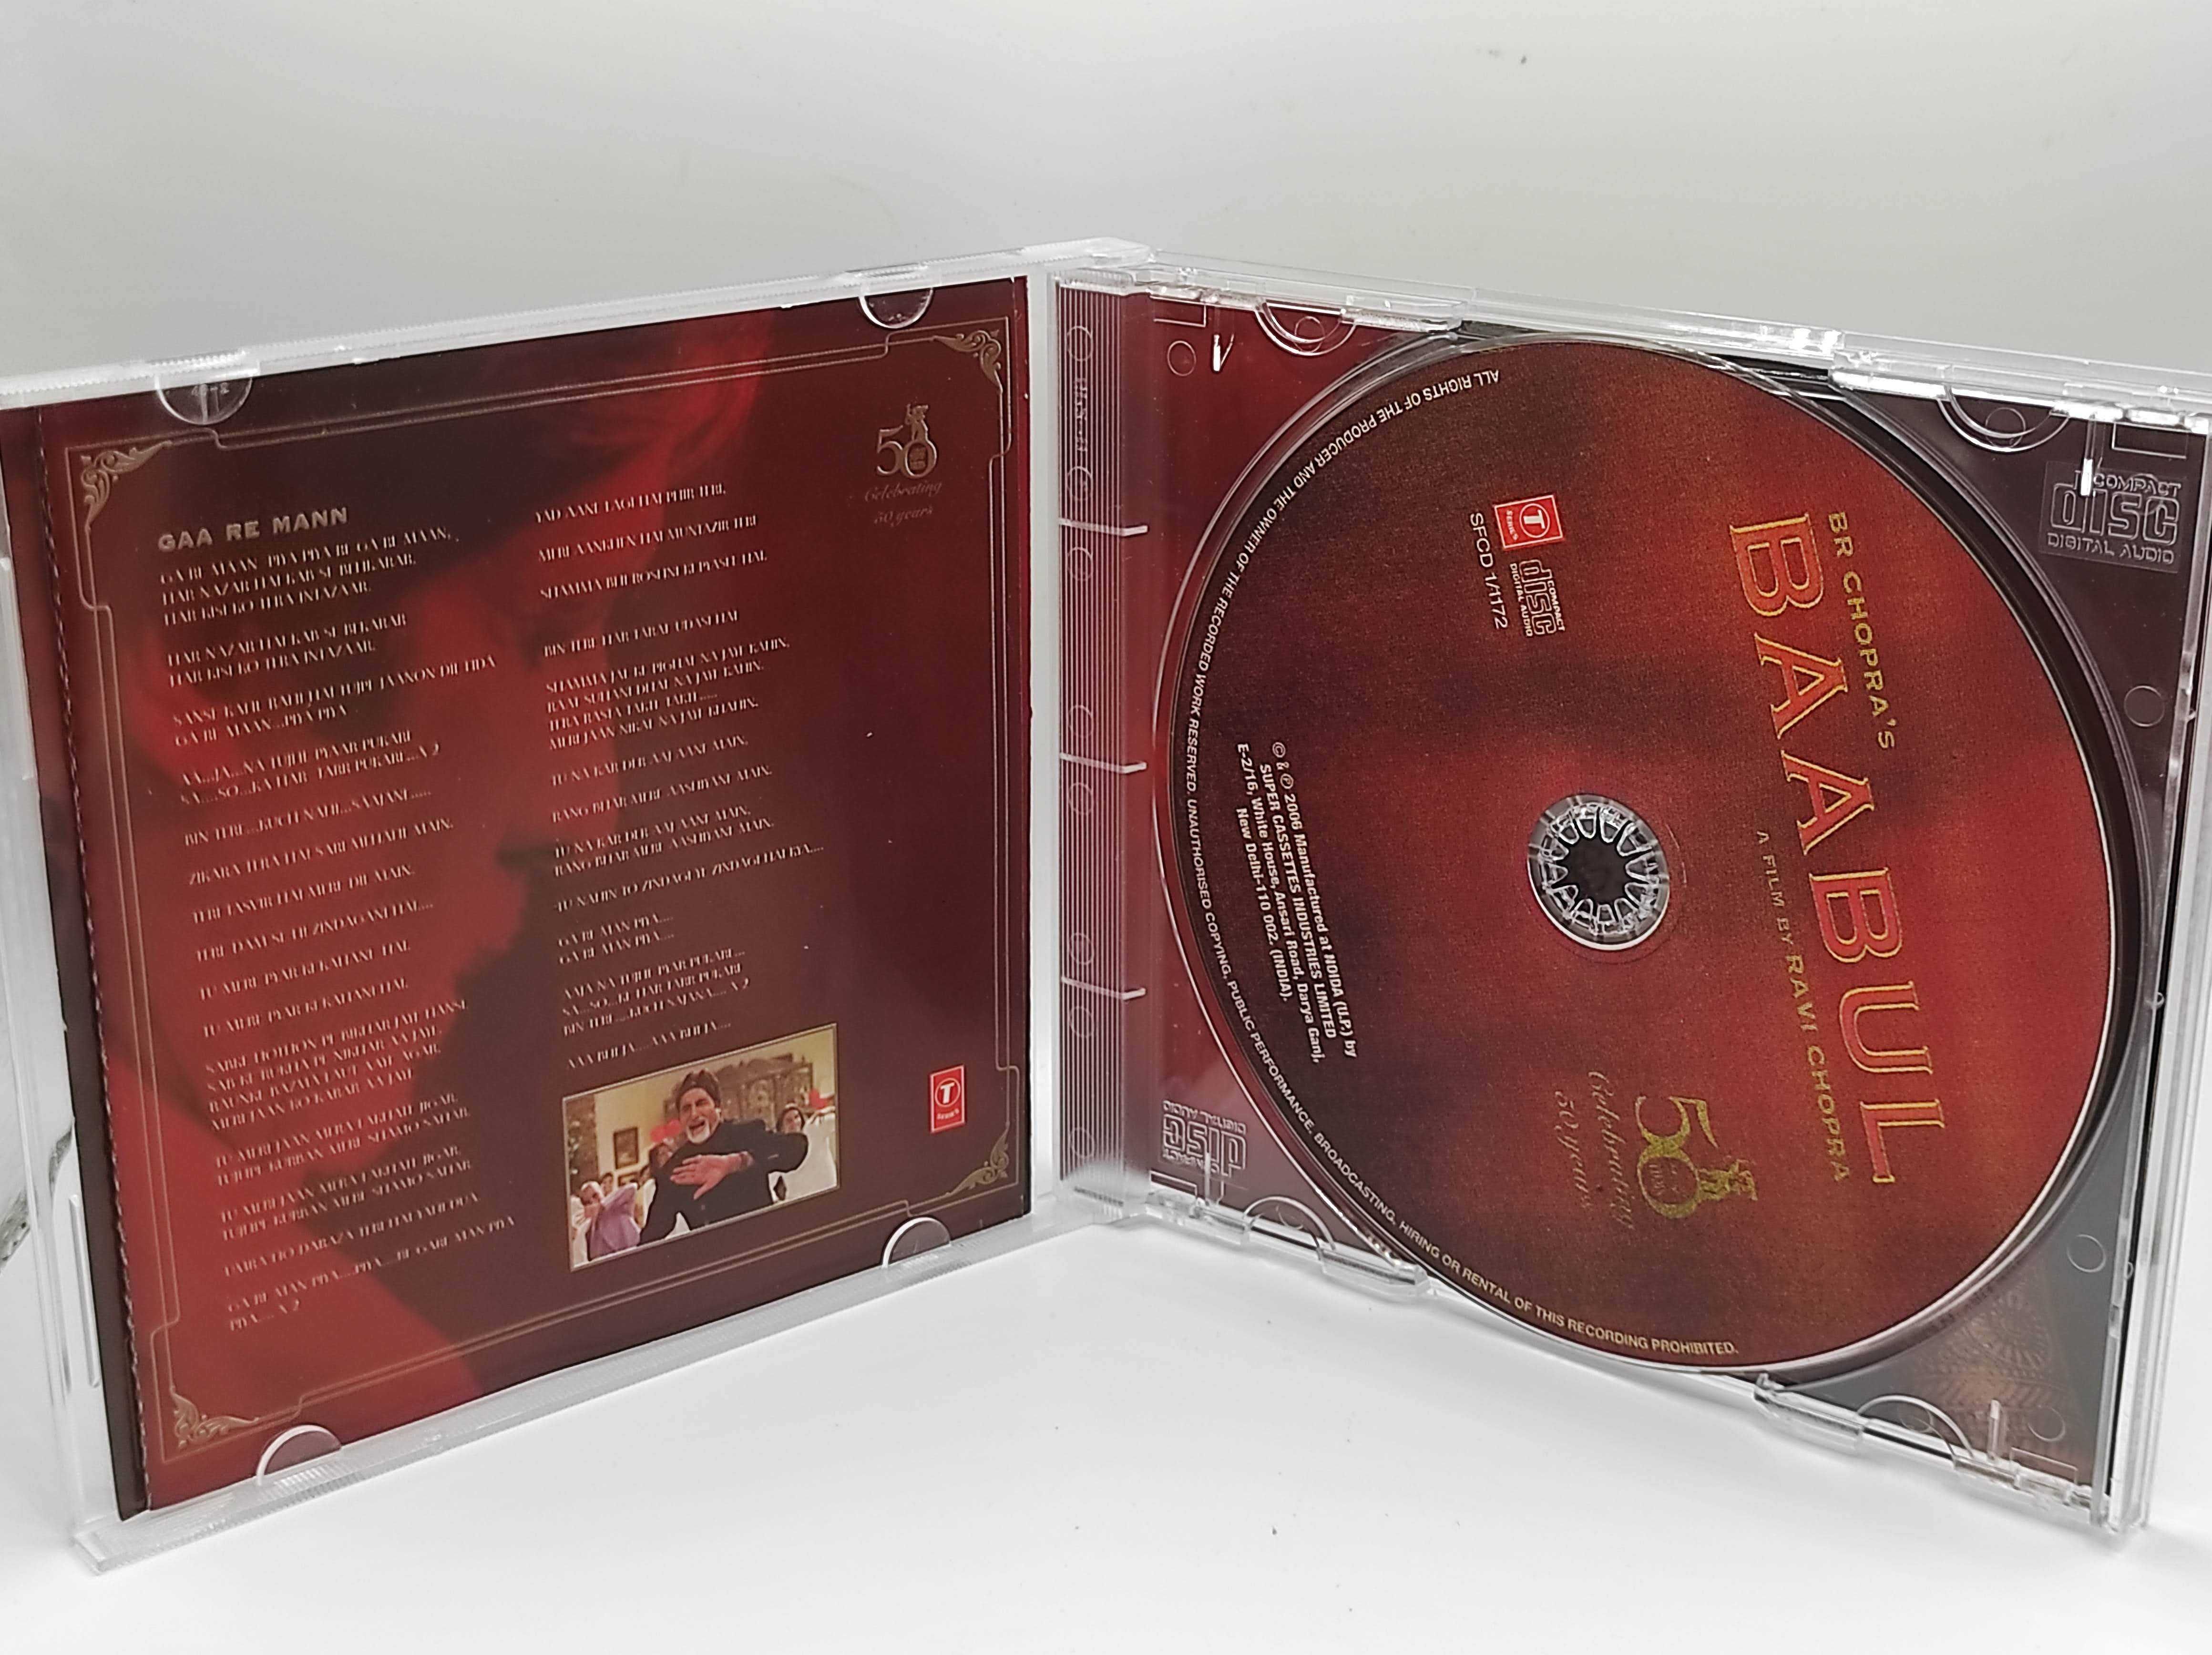 CD płyta audio Baabul Aadesh Shrivastava